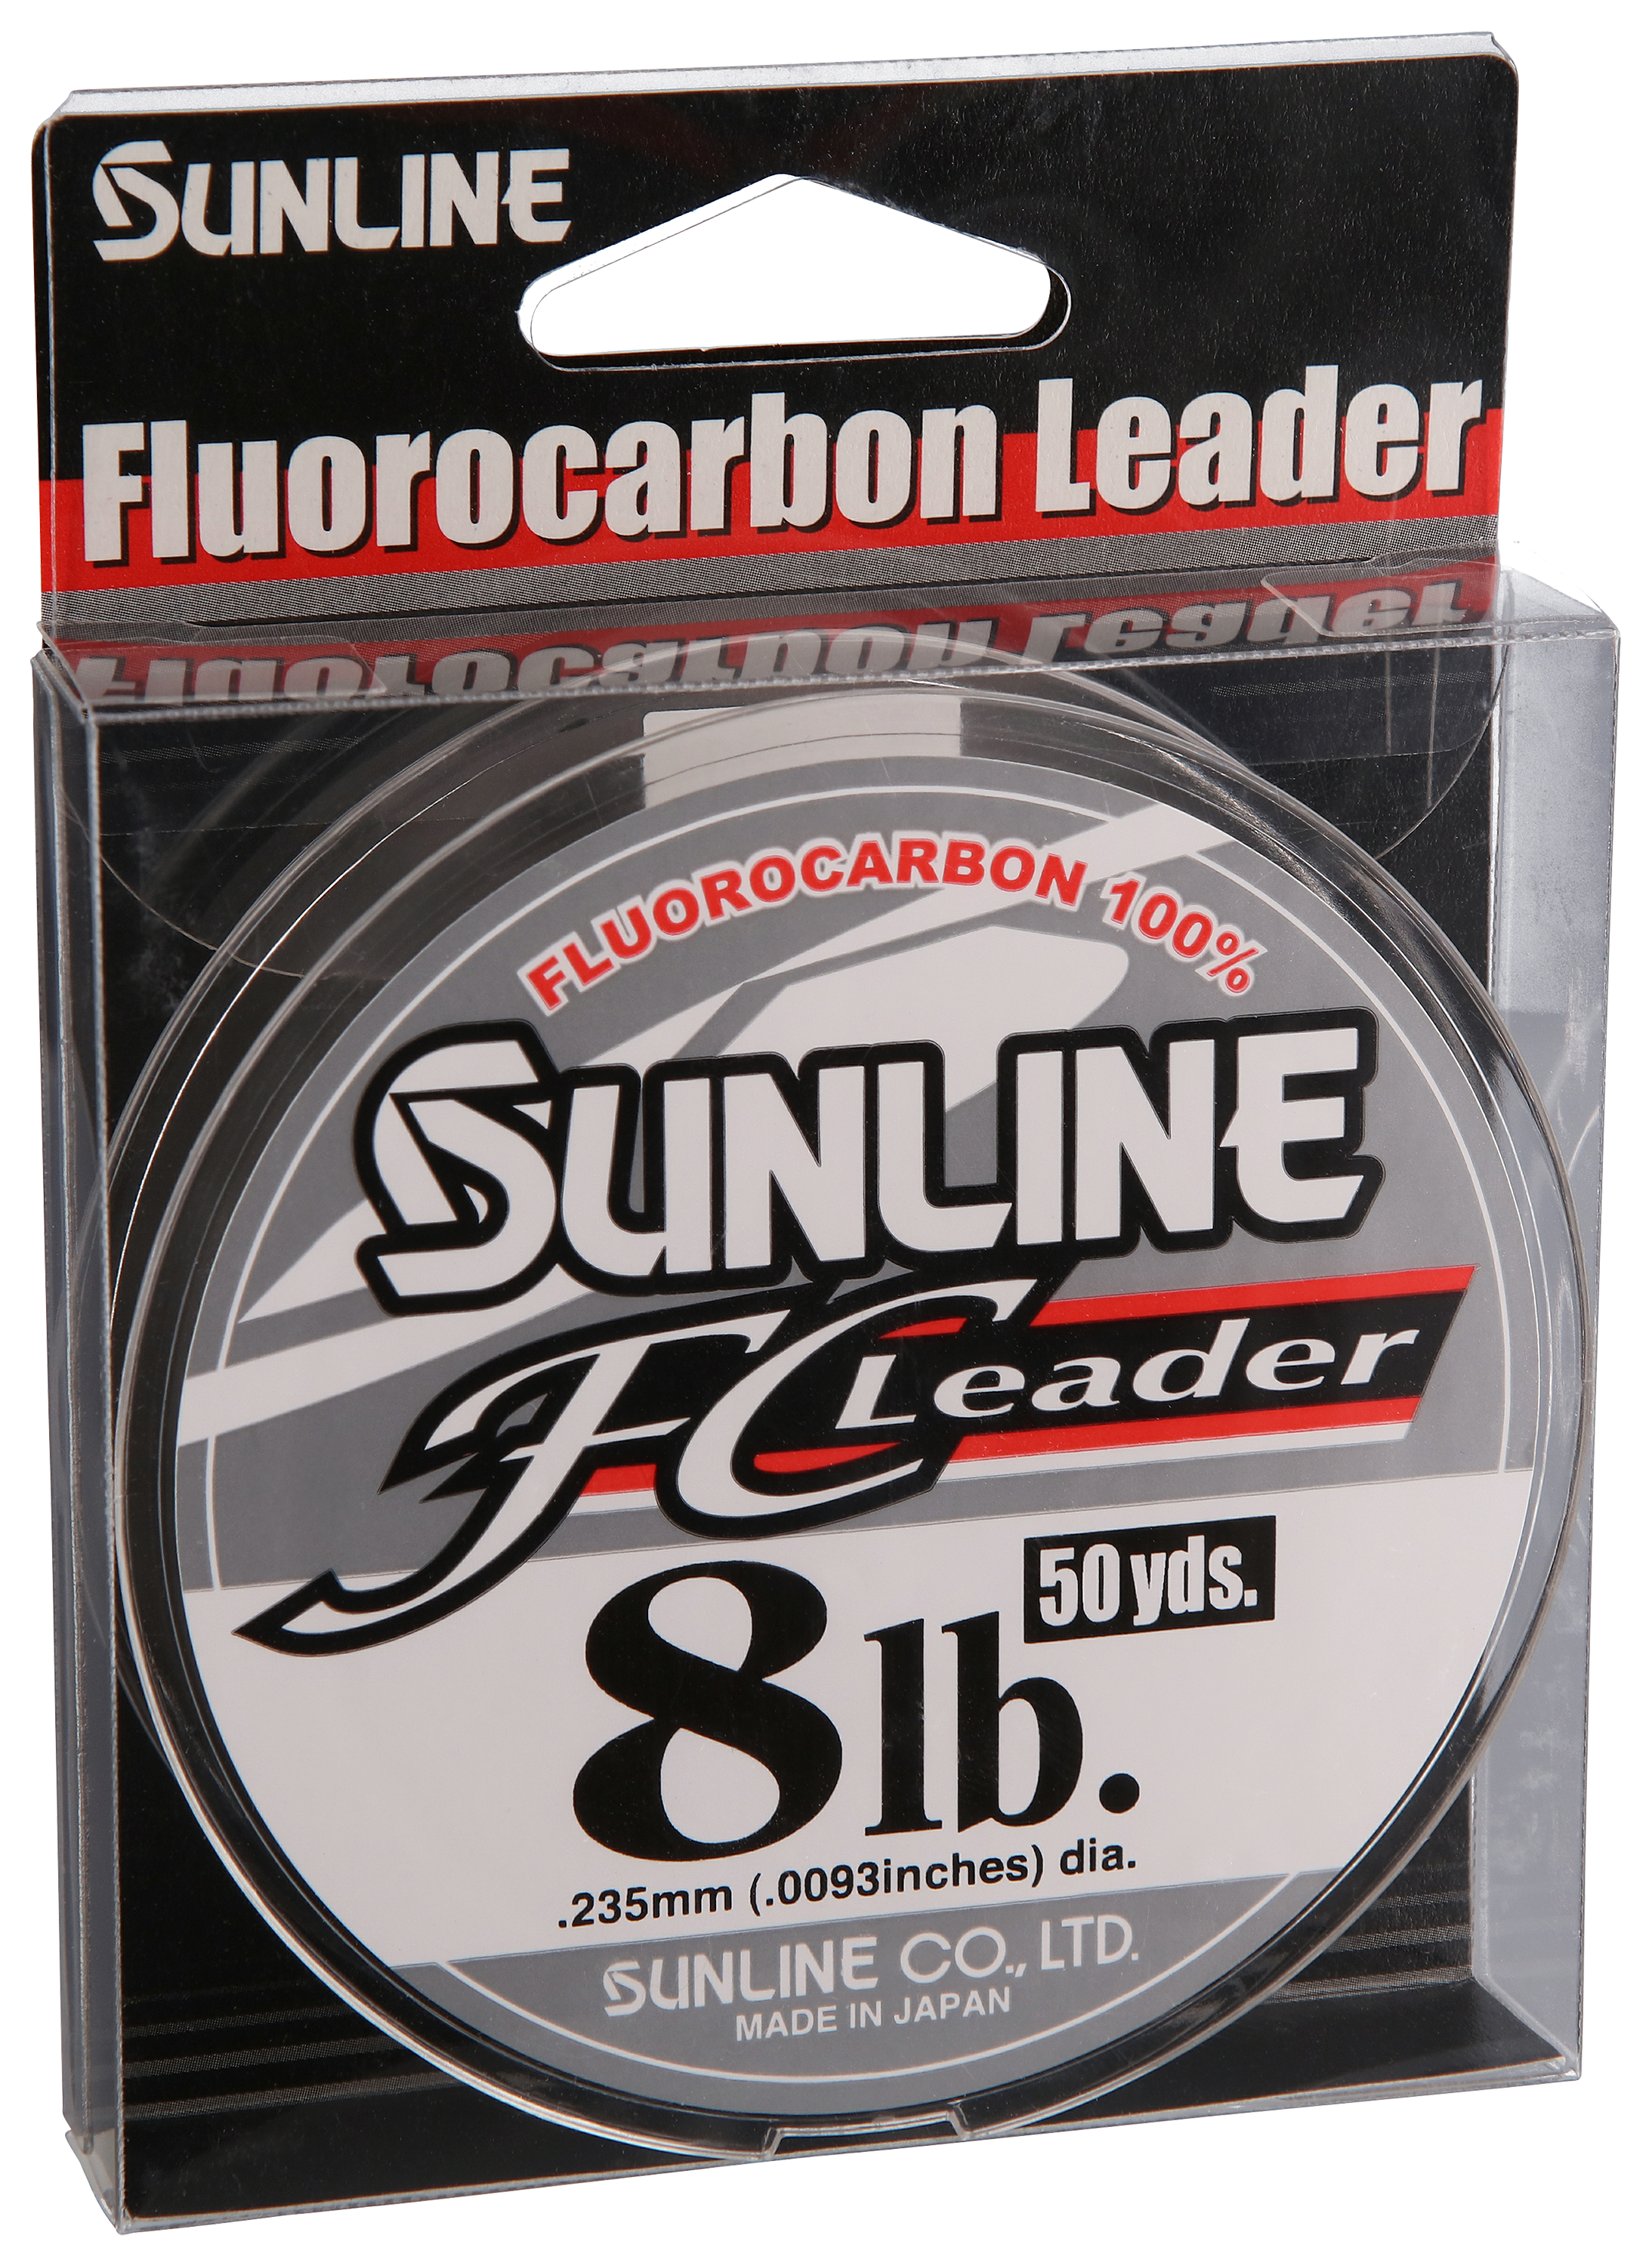 Sunline Fluorocarbon Leader